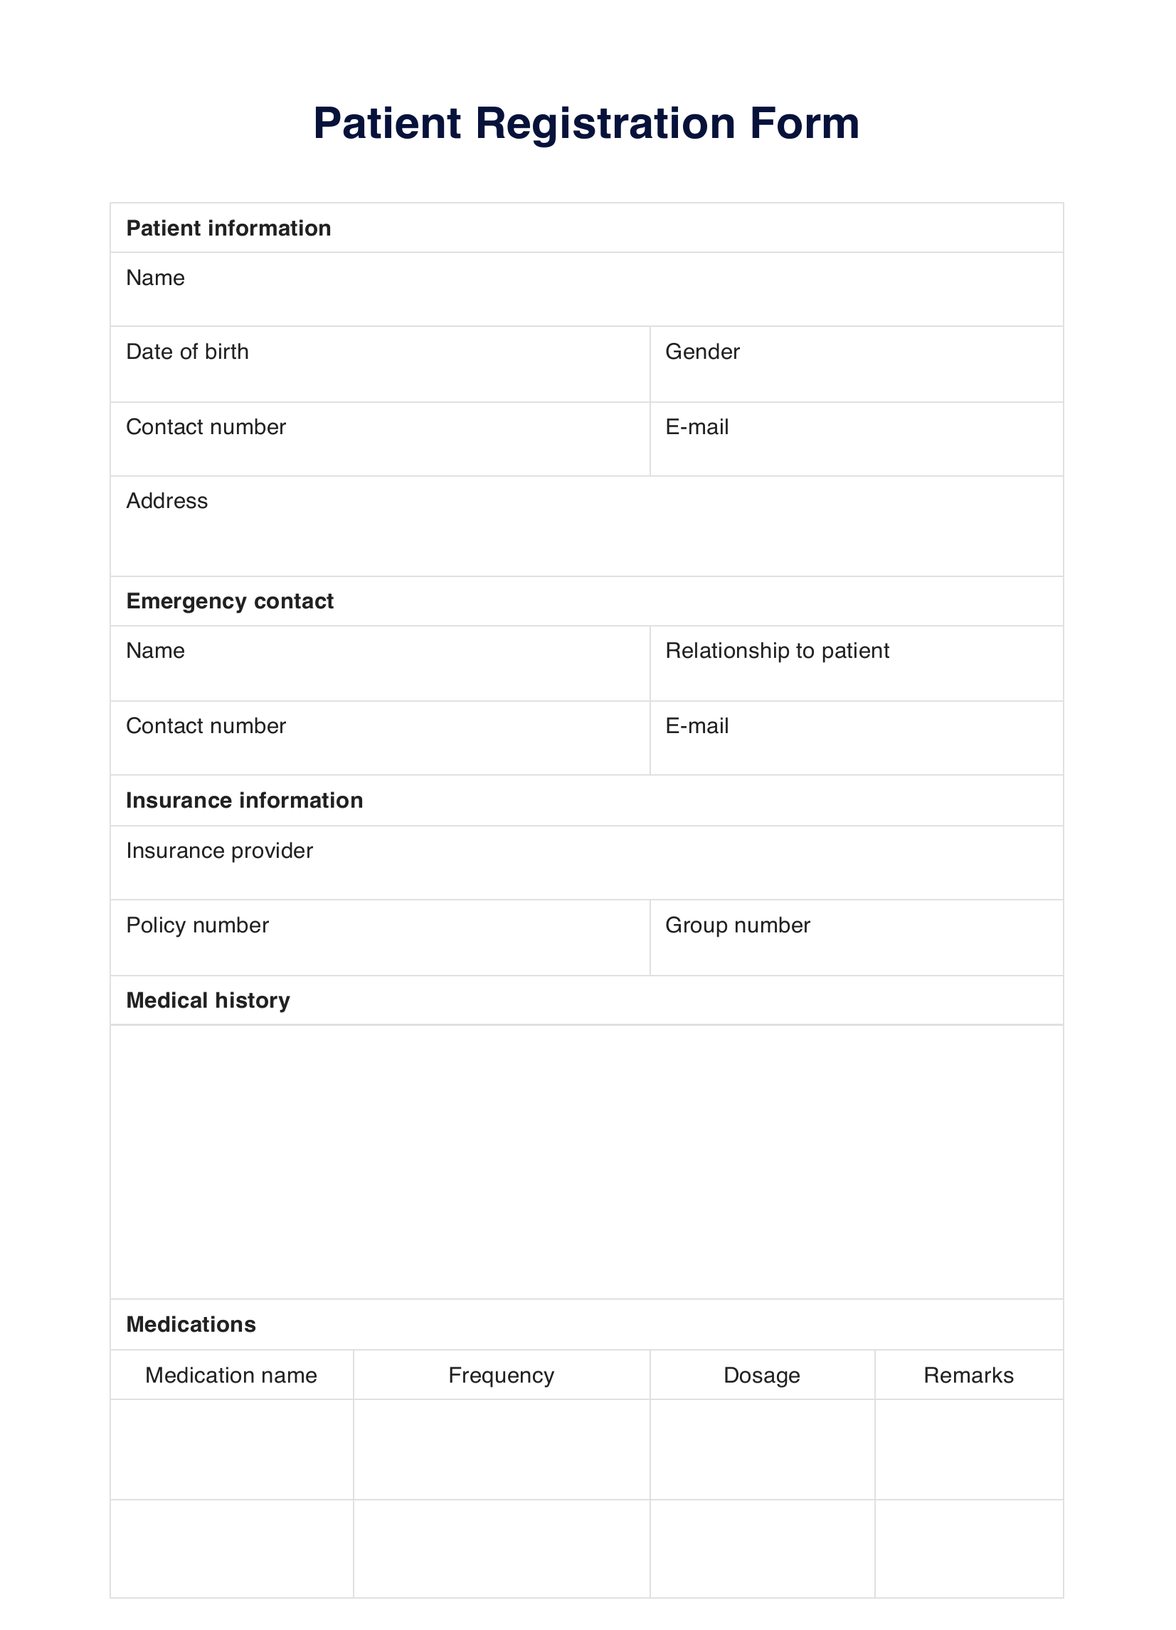 Patient Registration Form PDF Example